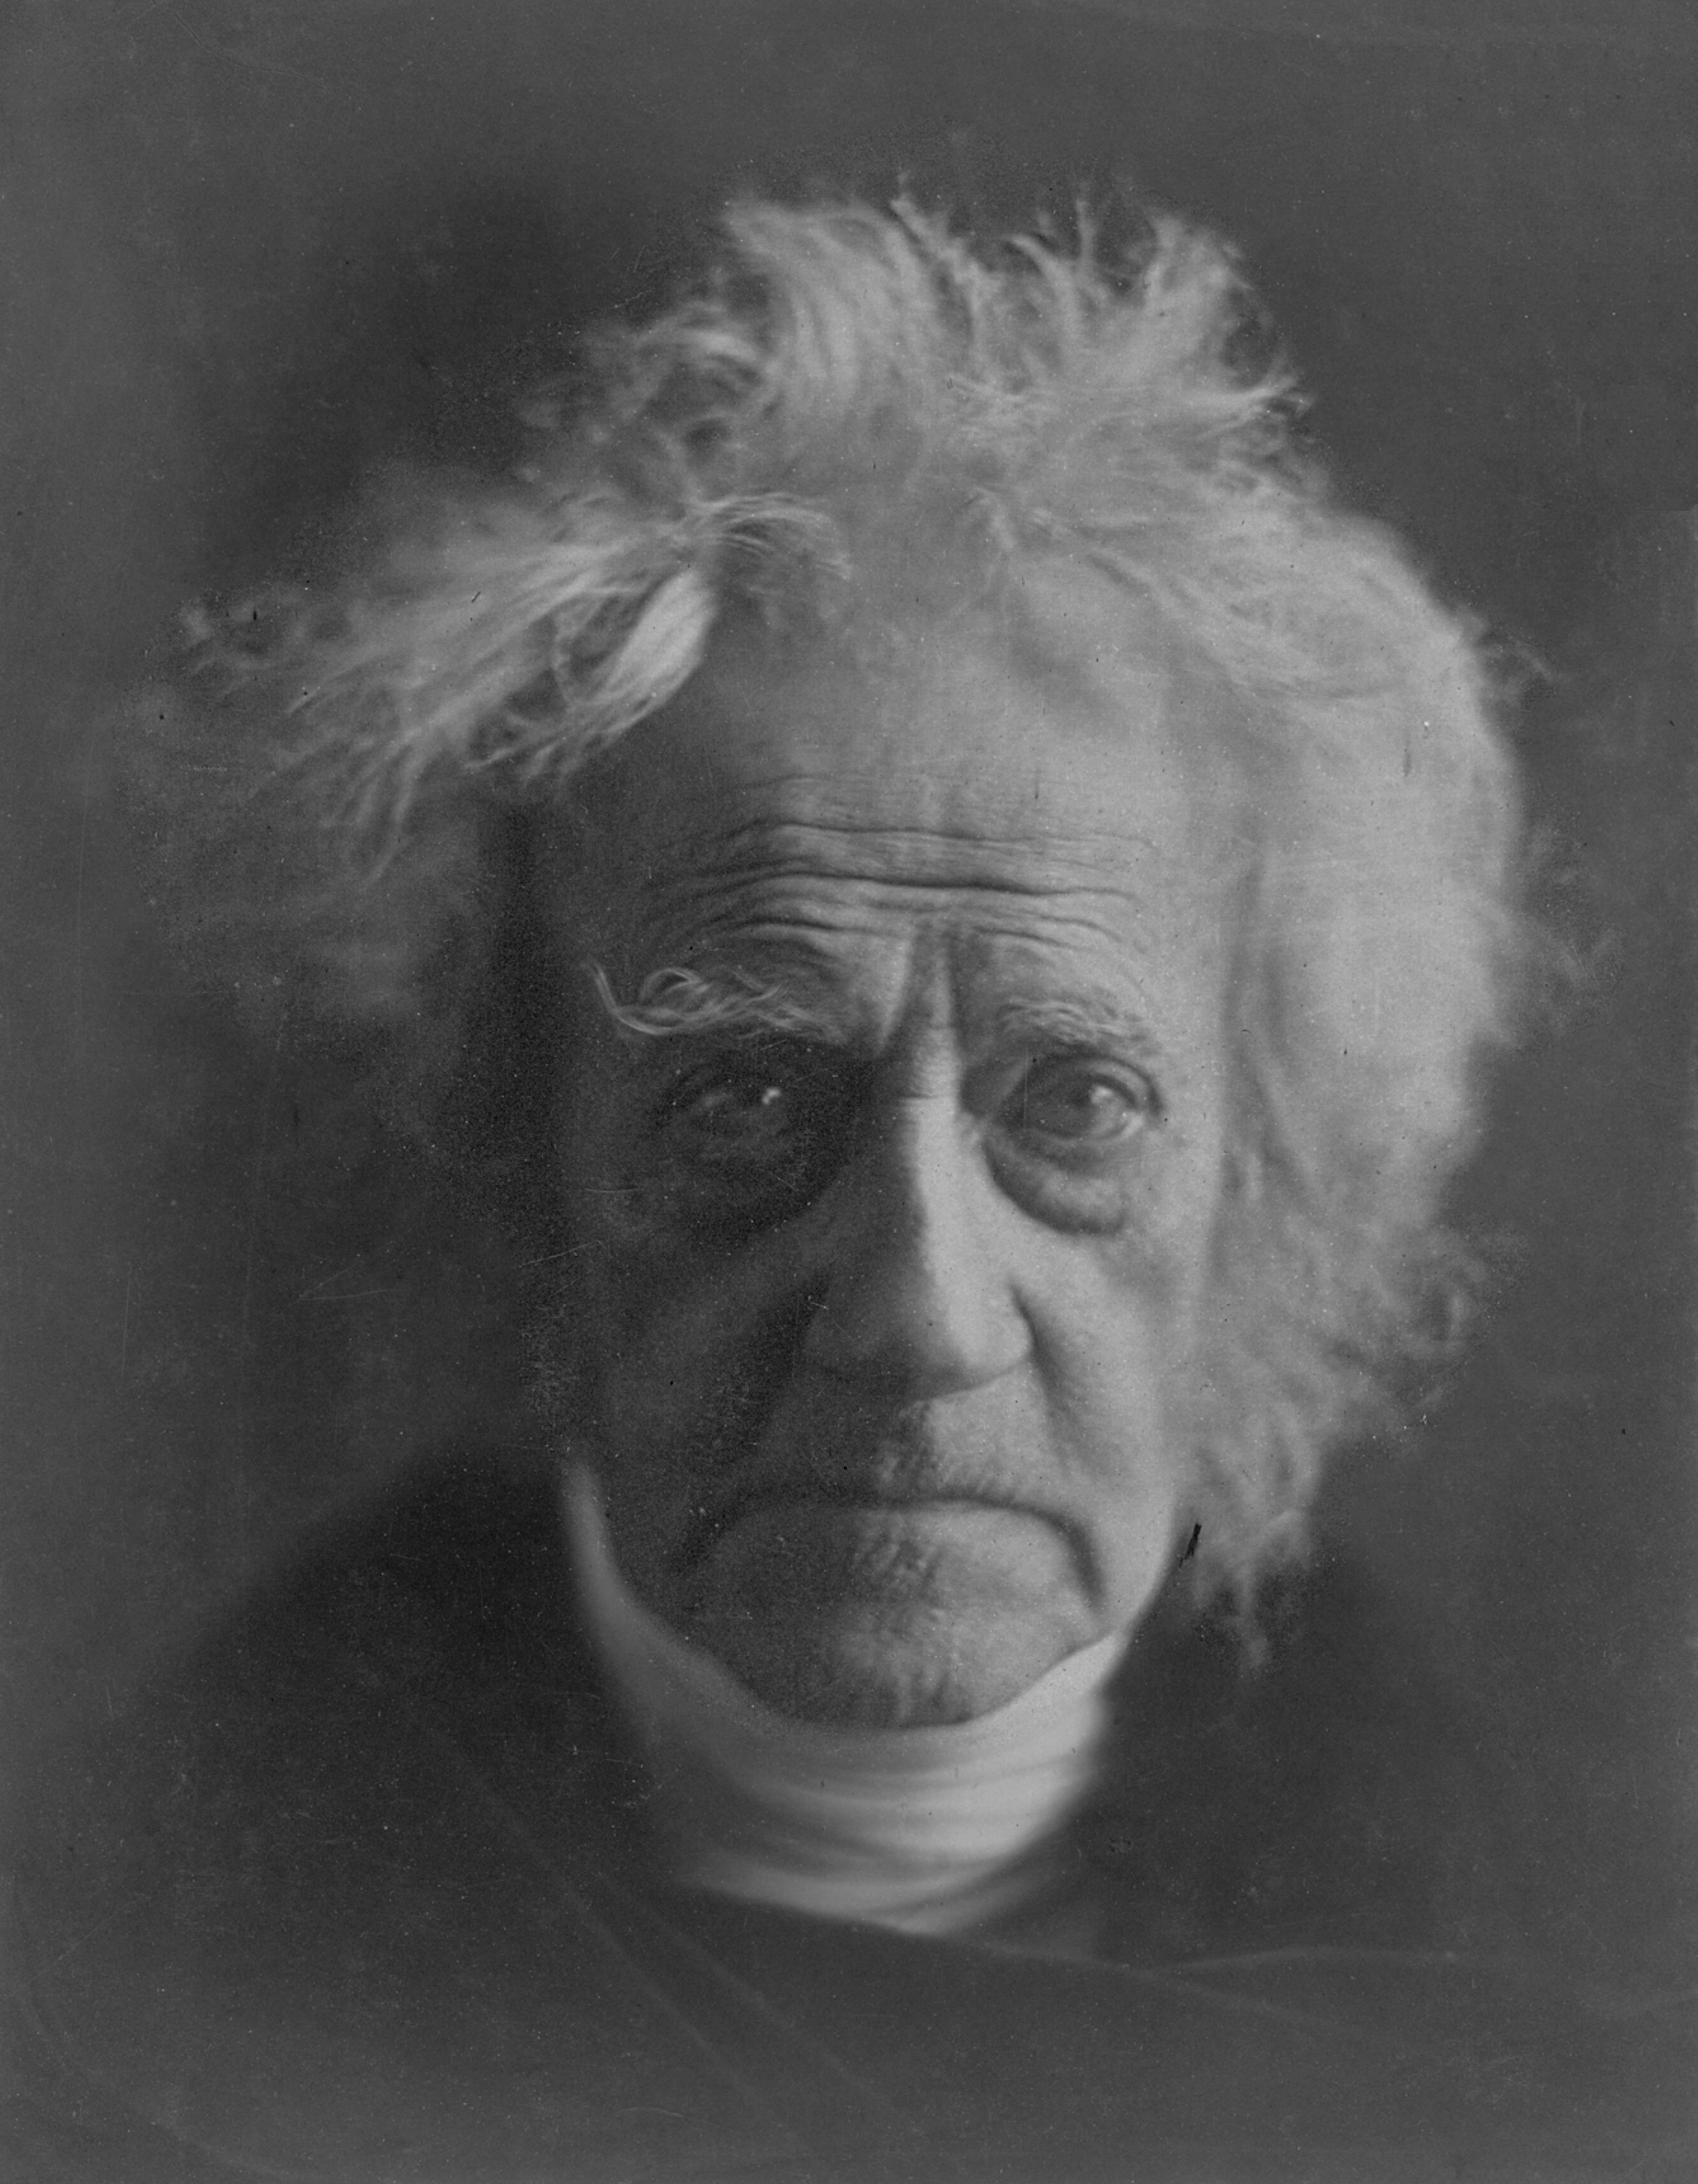 John Herschel takes the first glass plate photograph